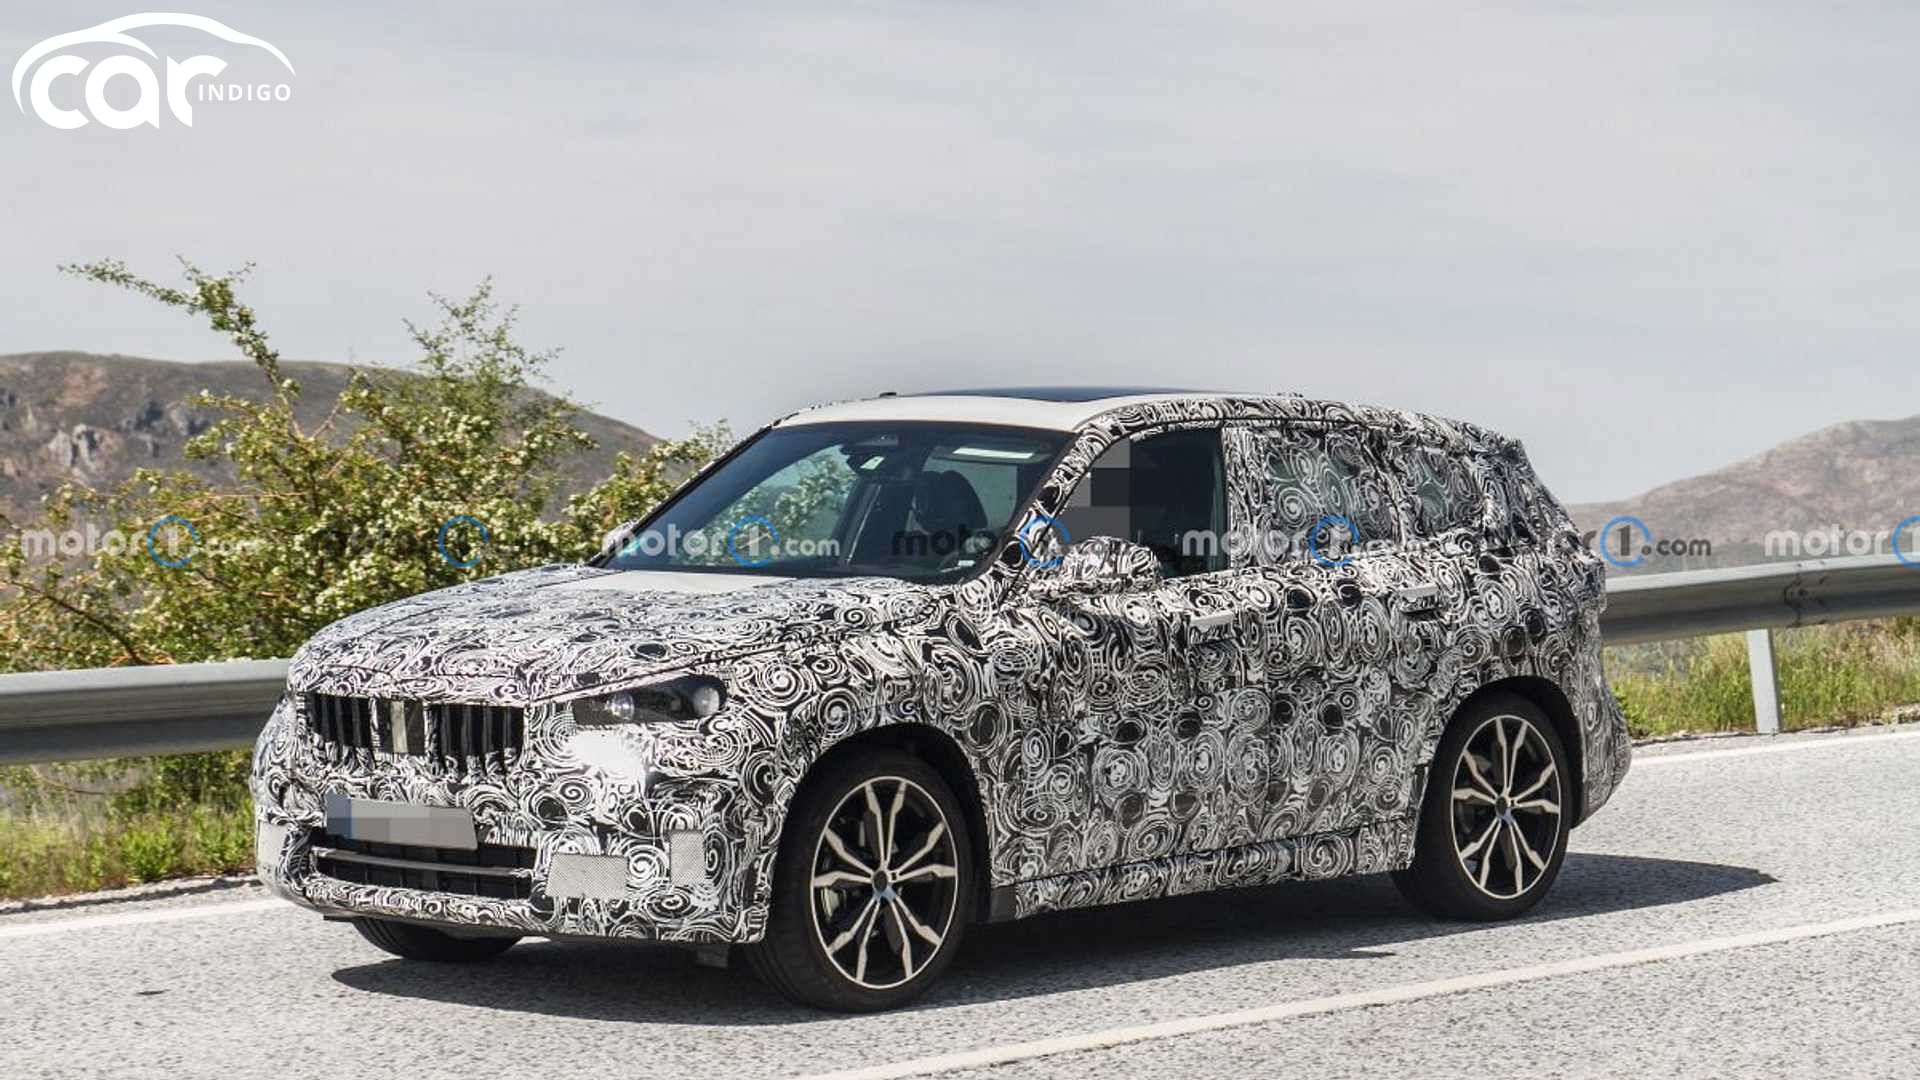 2022 BMW X1 Spied Testing